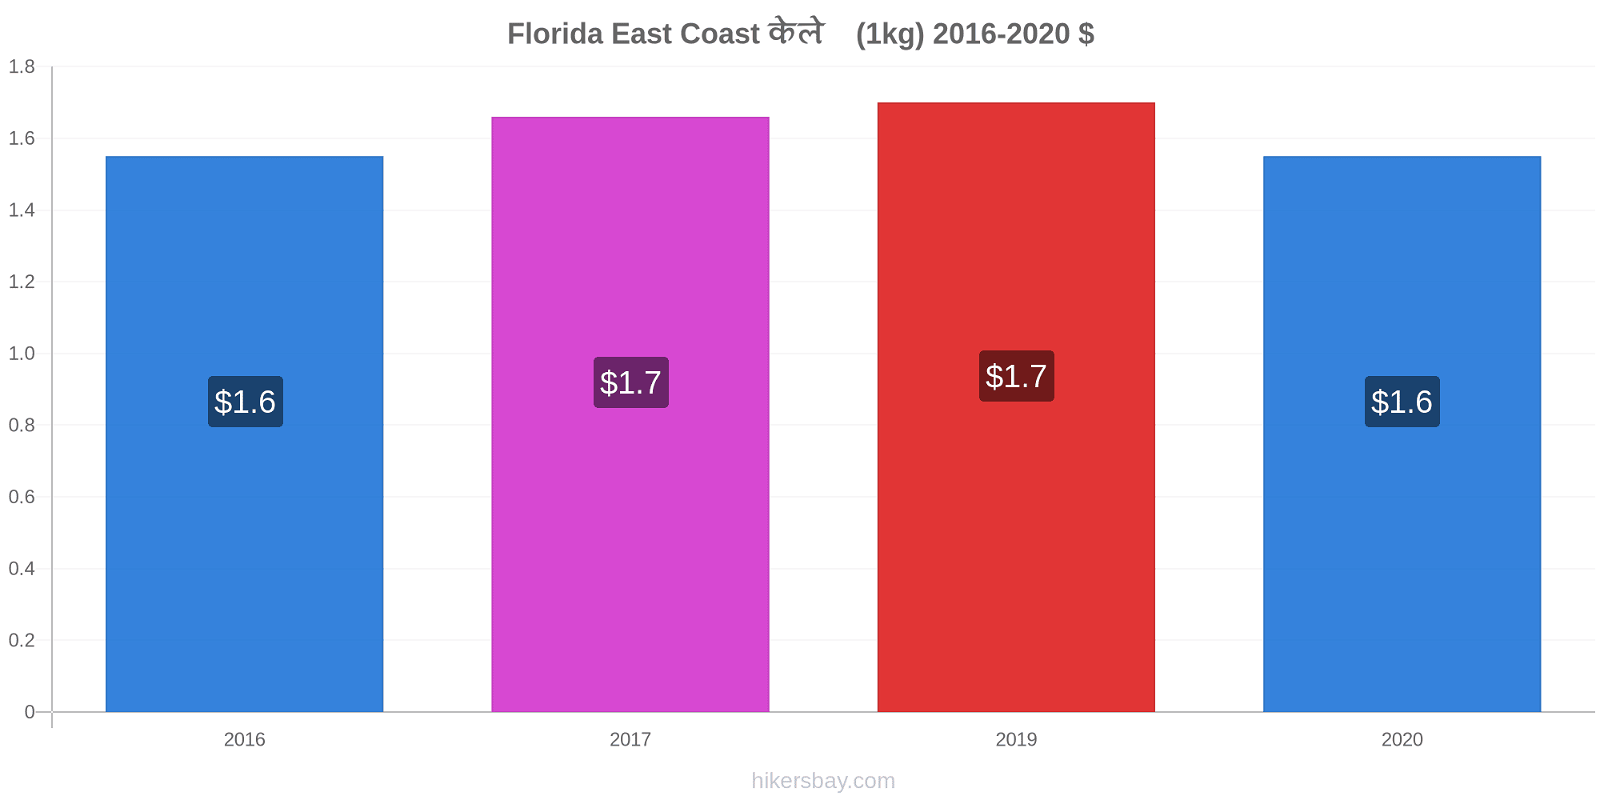 Florida East Coast मूल्य परिवर्तन केले (1kg) hikersbay.com